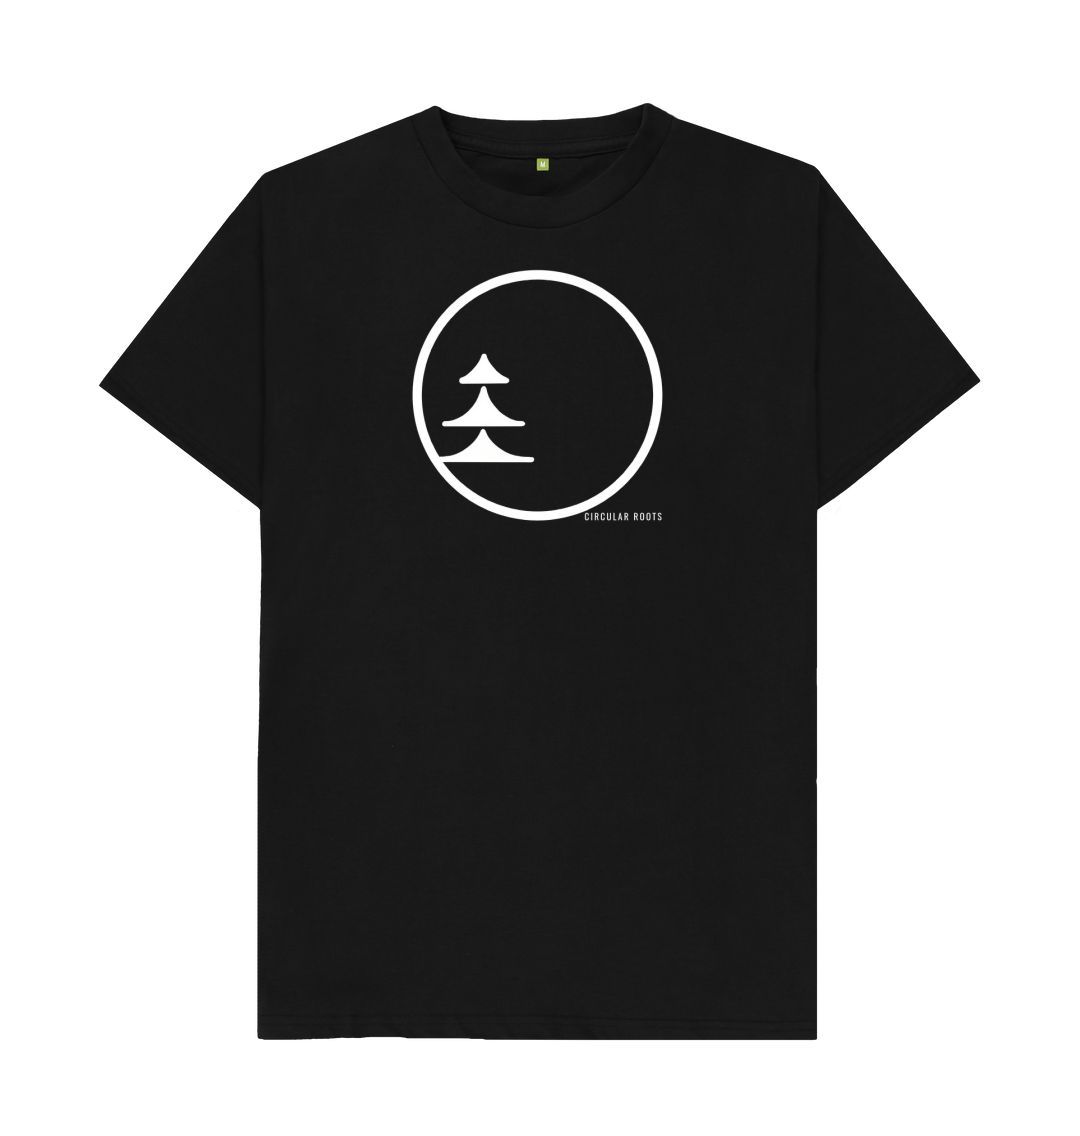 Black Circular Basics - white logo organic cotton t-shirt